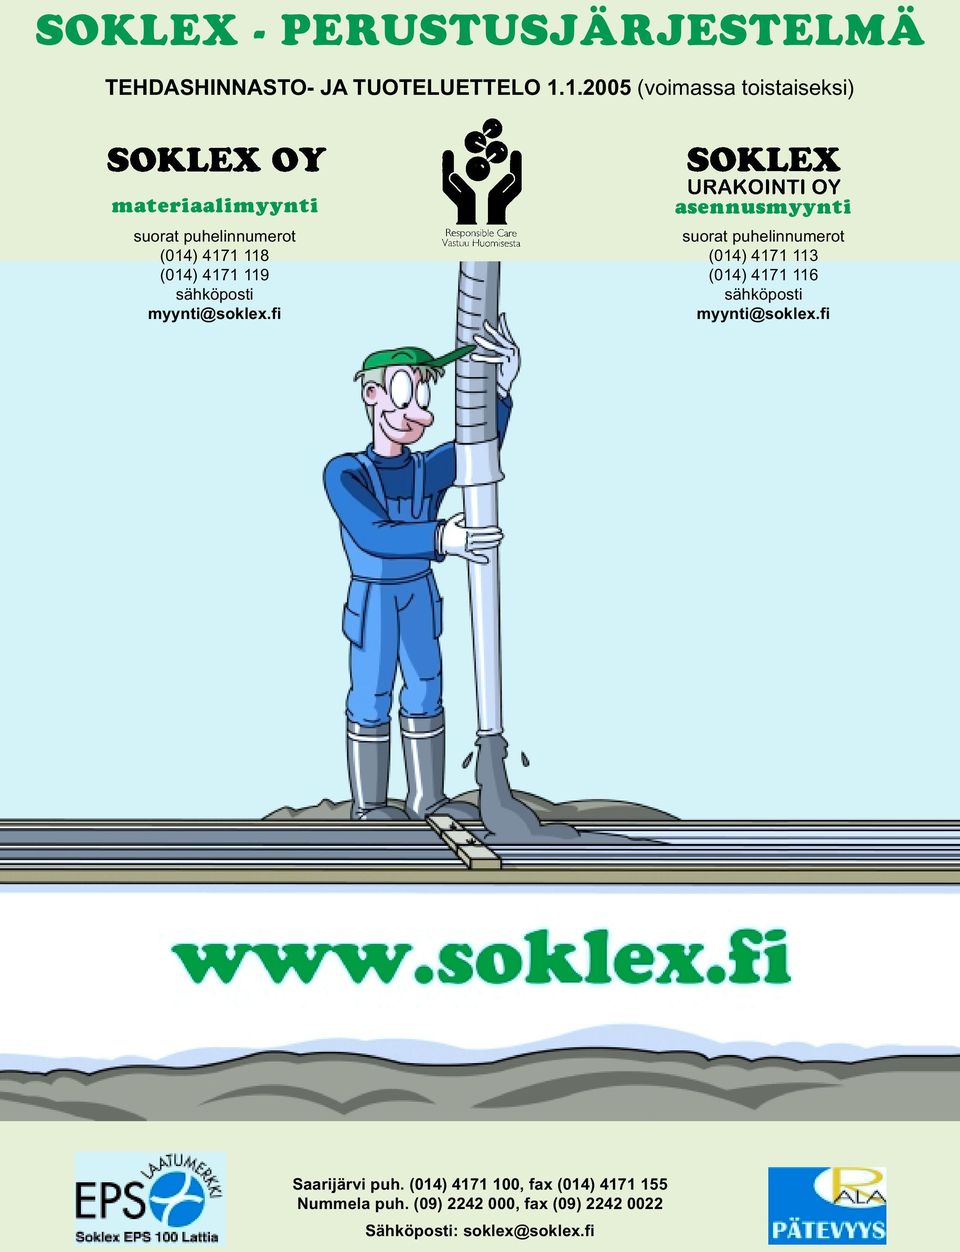 4171 116 sähköposti sähköposti myynti@soklex.fi myynti@soklex.fi Saarijärvi puh.